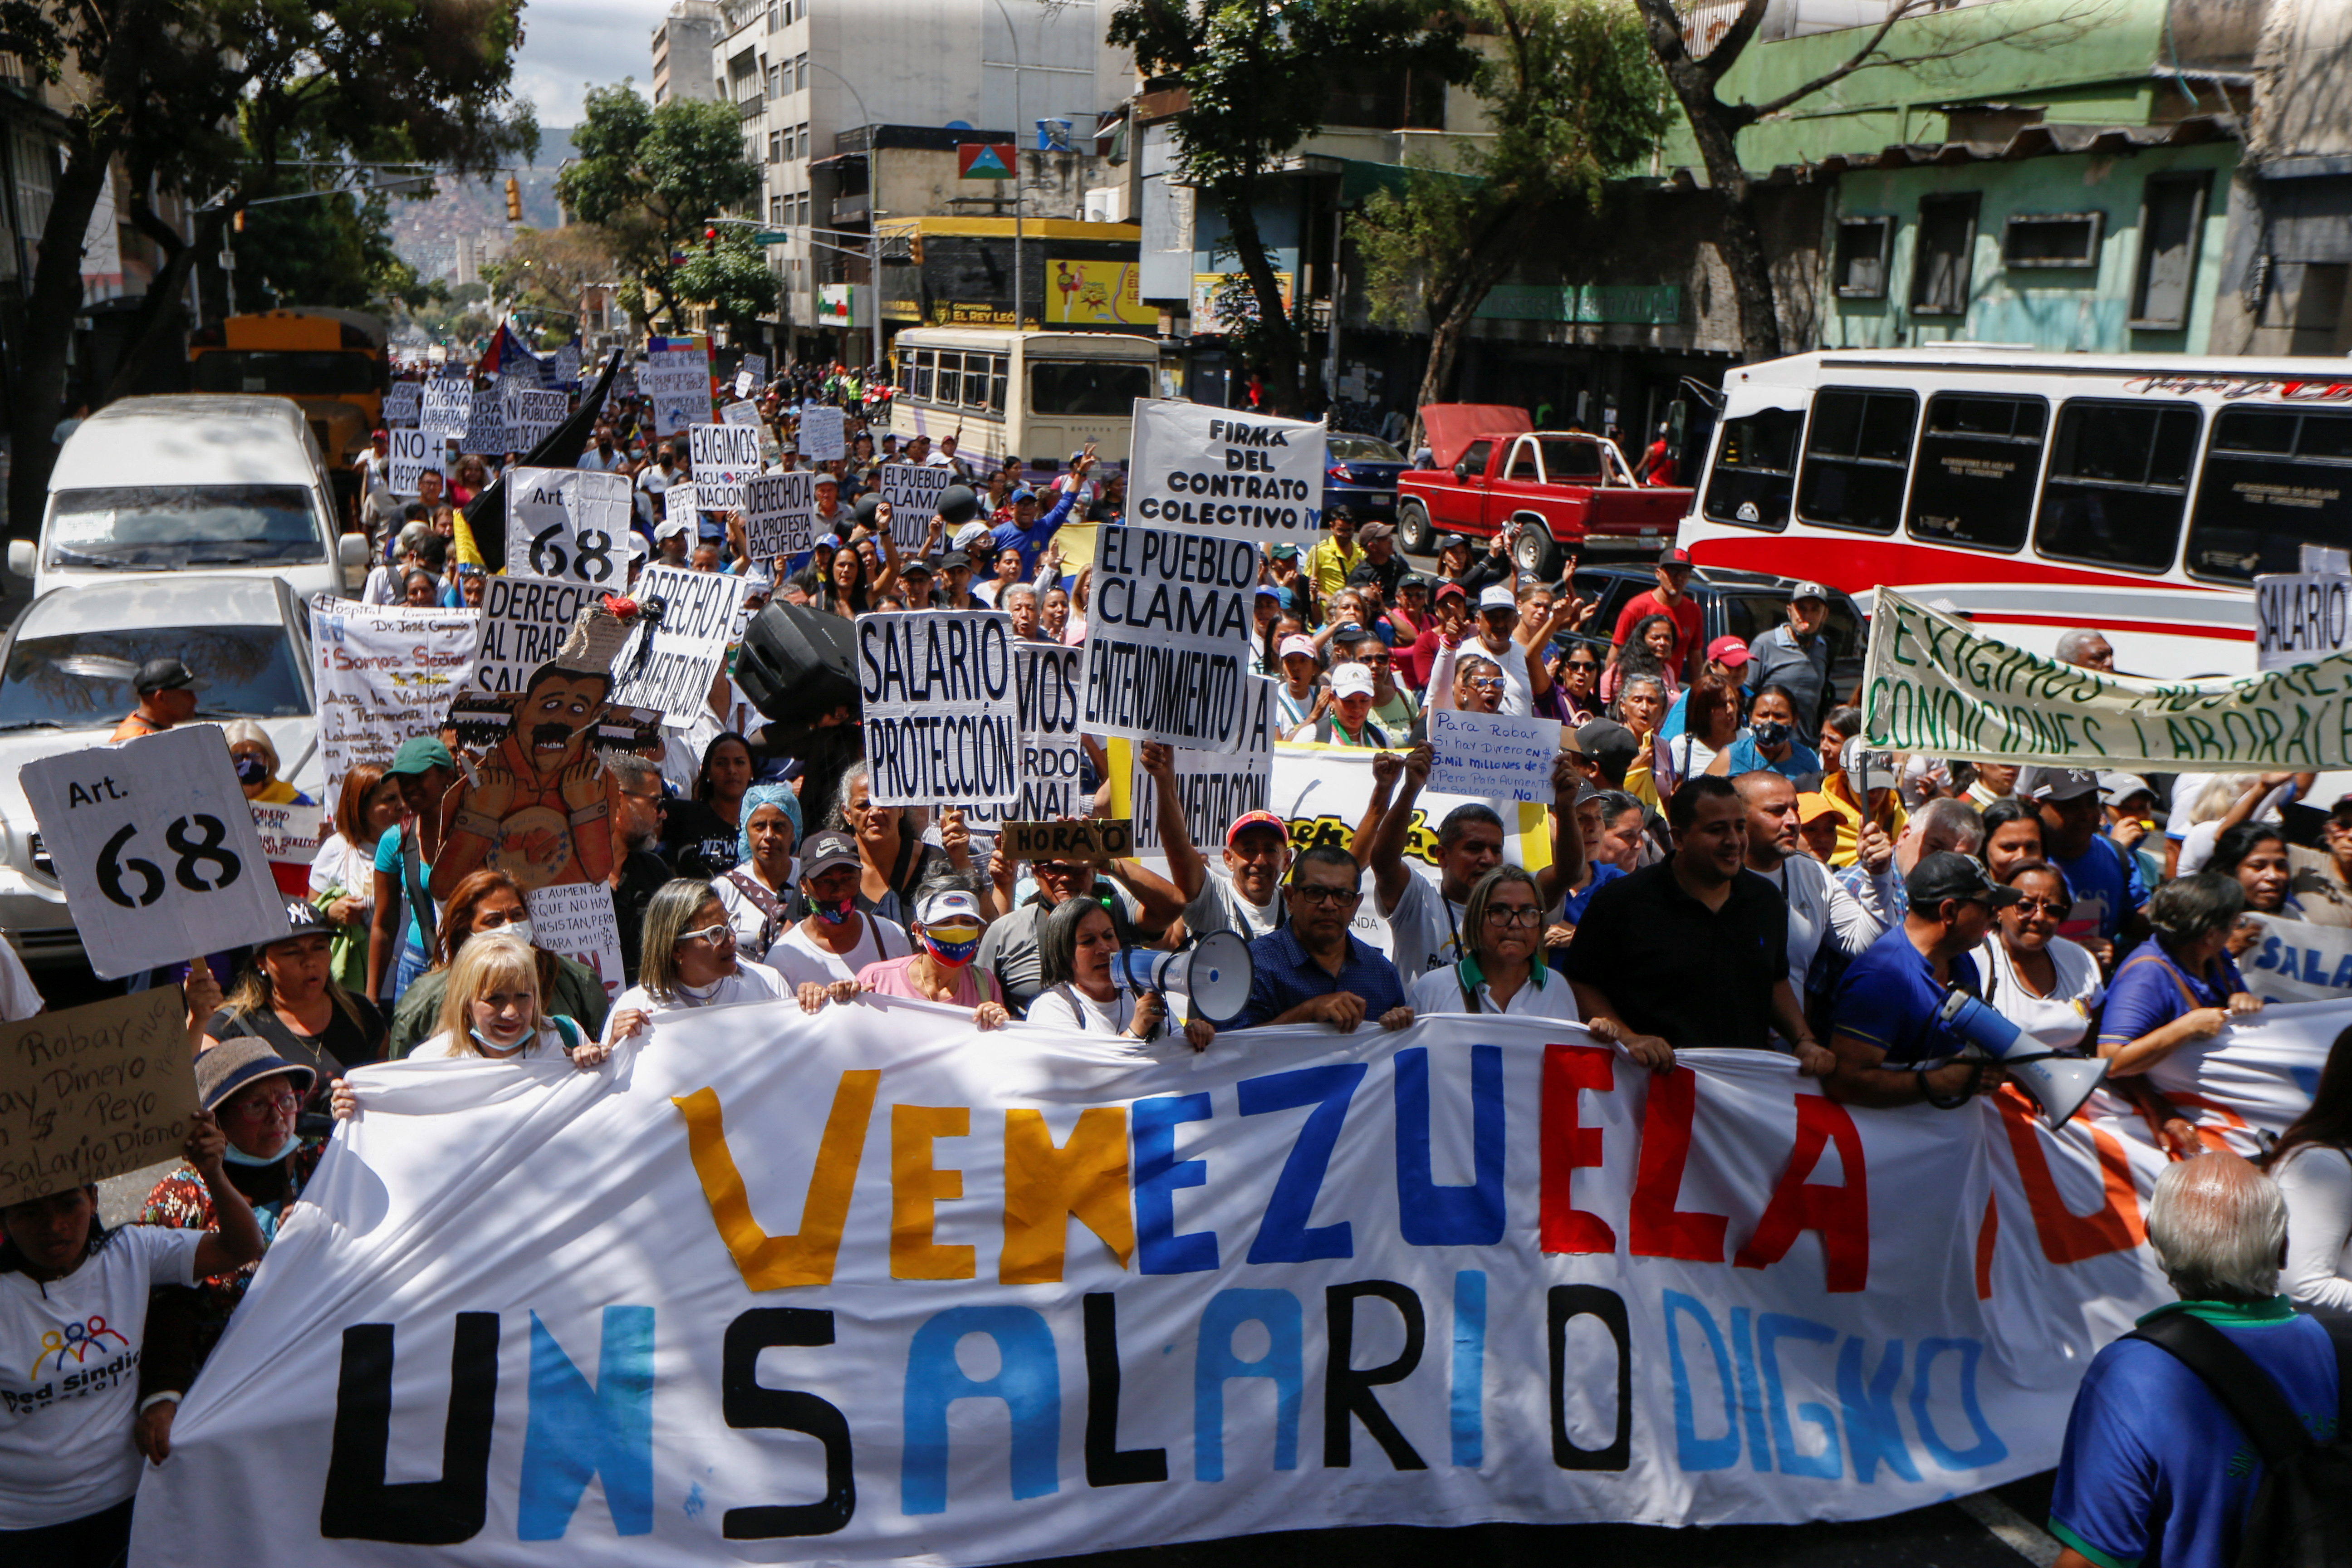 Al menos 200 trabajadores públicos de la salud y educación, además de personal jubilado, volvieron a protestar este miércoles en Caracas (REUTERS/Leonardo Fernandez Viloria)